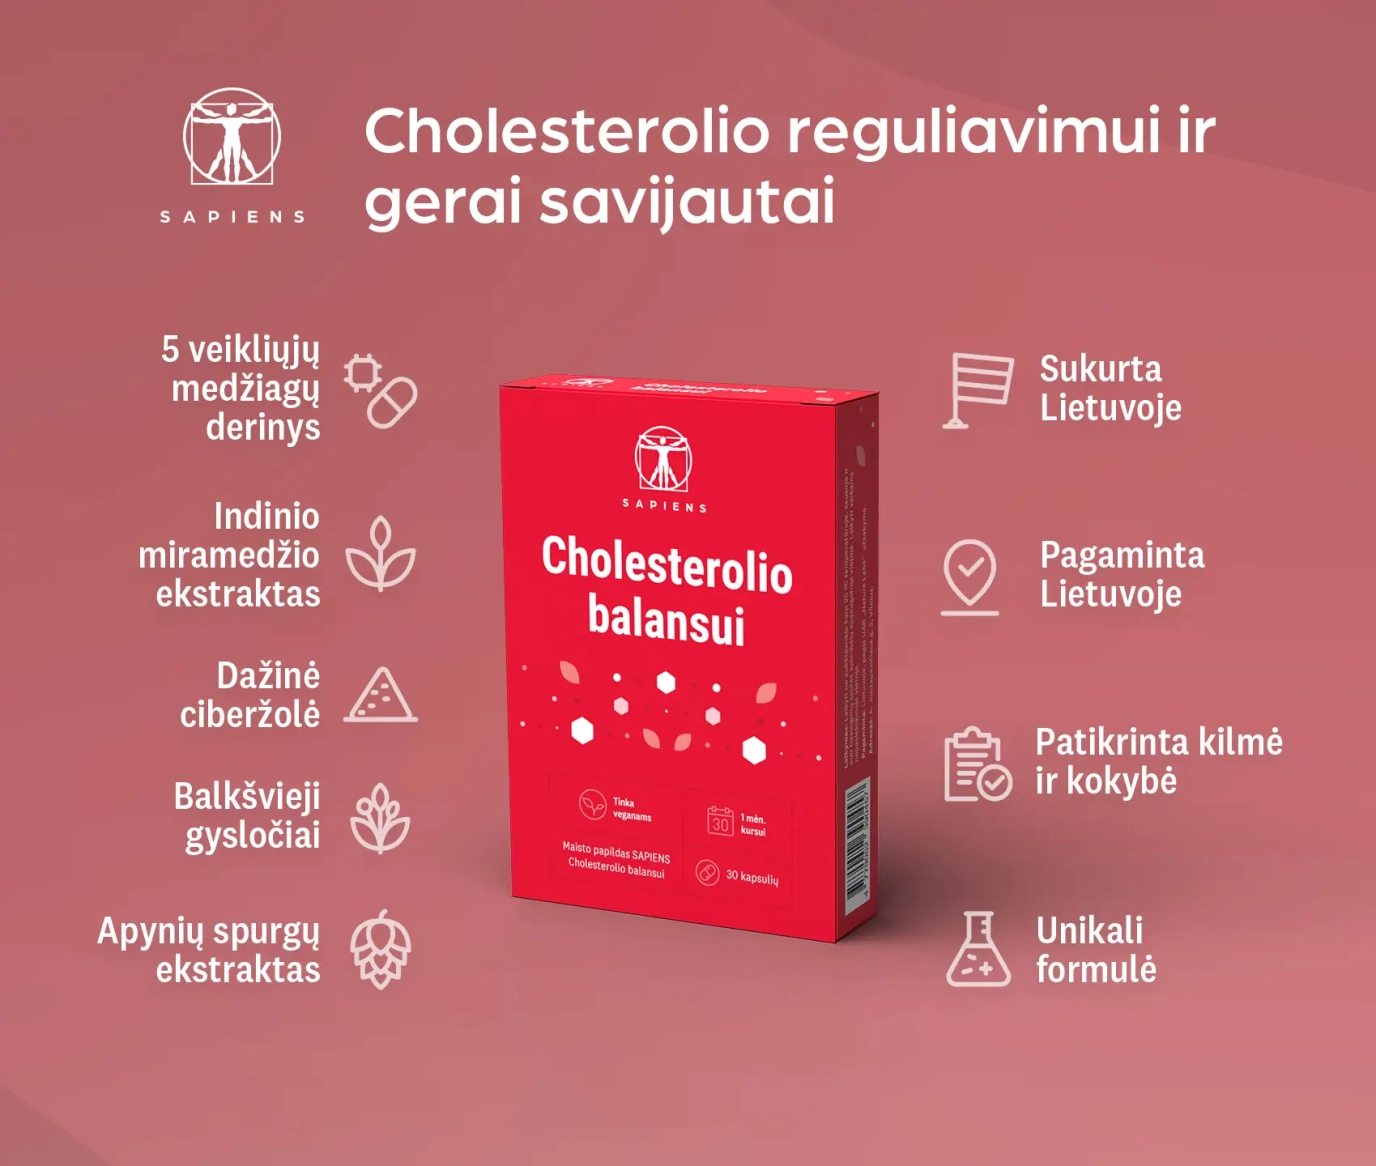 Cholesterolio balansui